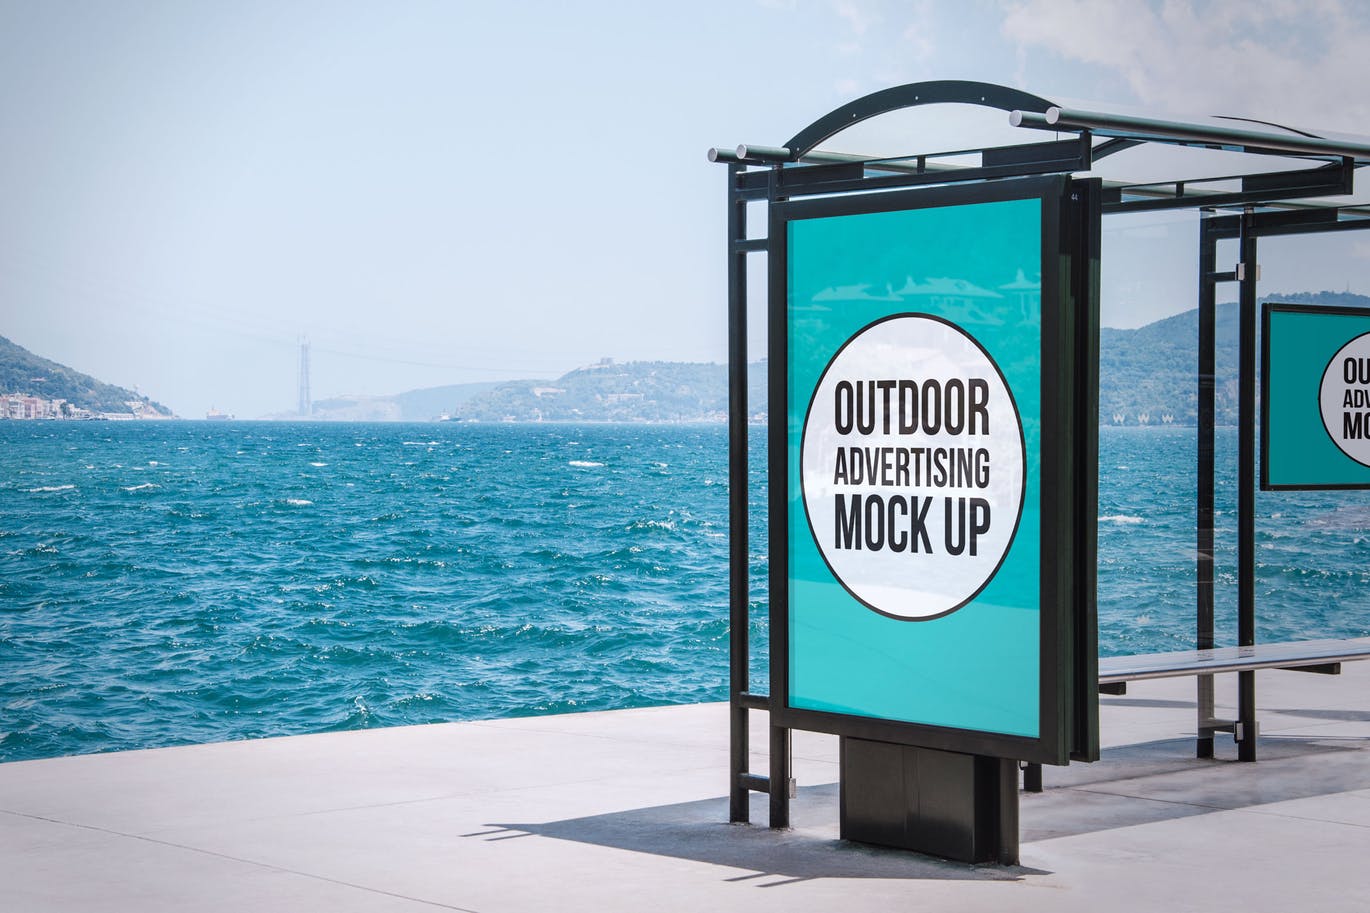 海边户外灯箱广告牌广告效果图样机模板#6 Outdoor Advertisement Mockup Template #6插图